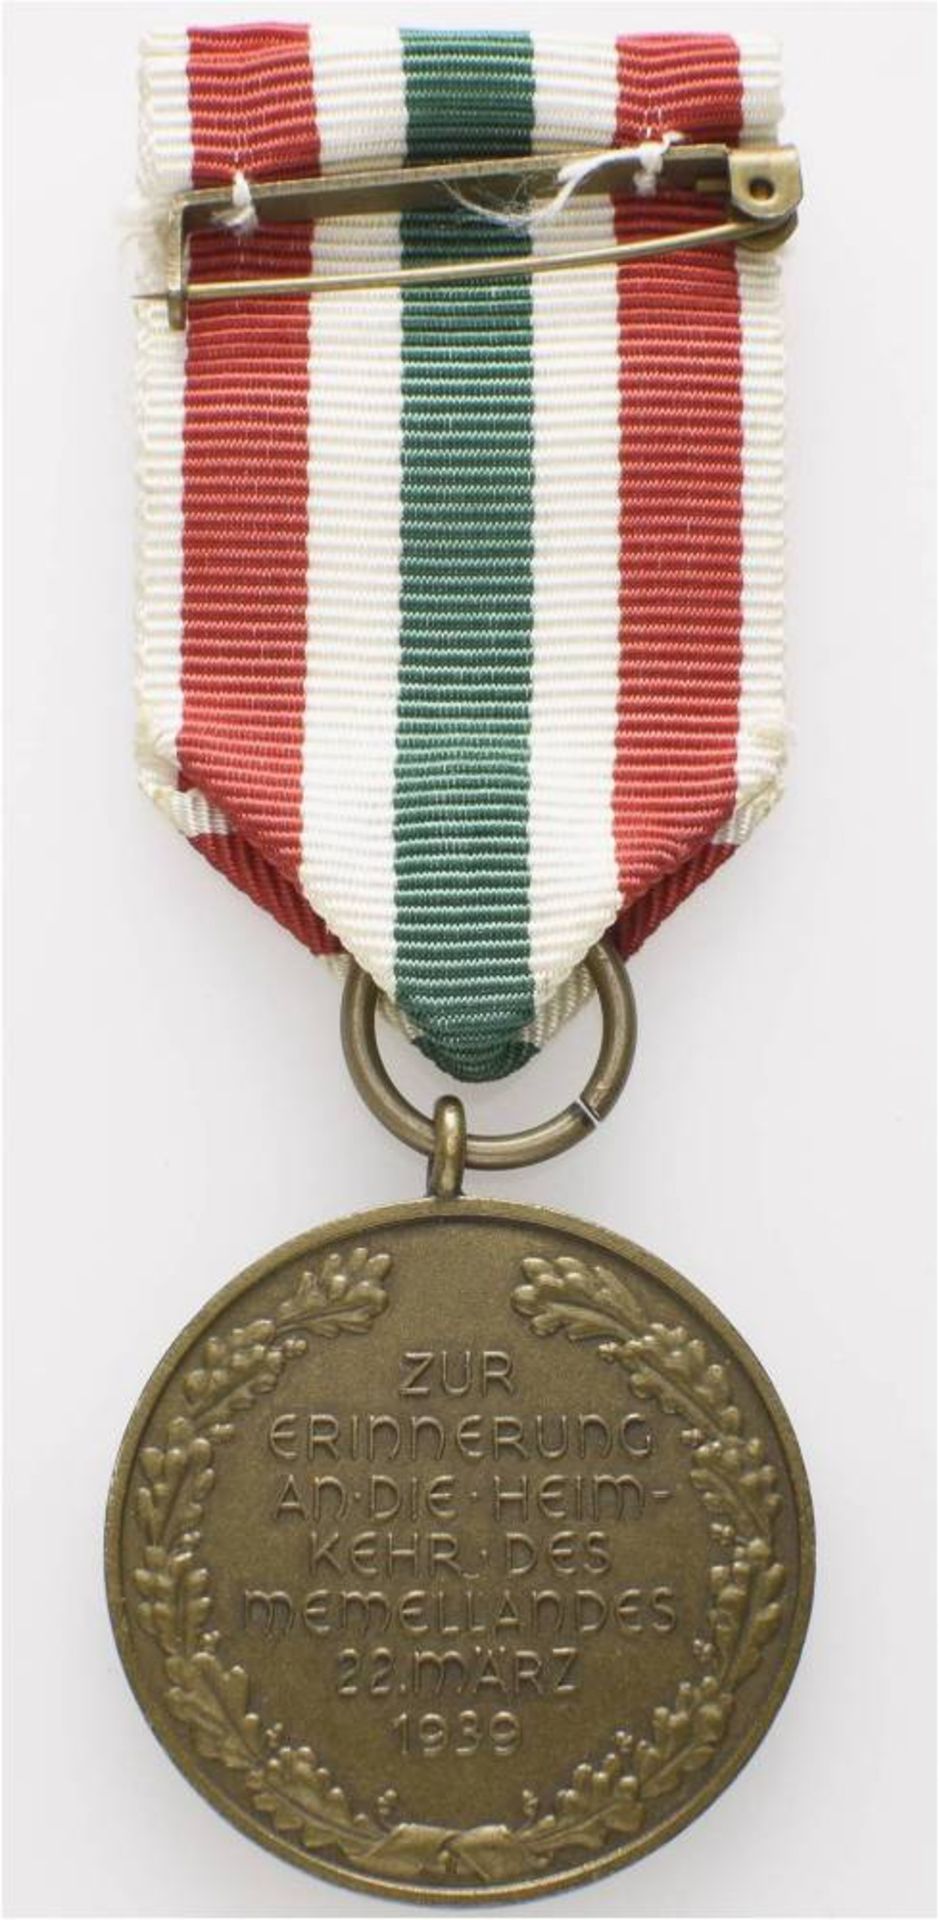 Medaille zur Erinnerung an die Heimkehr des Memellandes (1939-1940), am Band, broschiert, OEK - Bild 2 aus 2